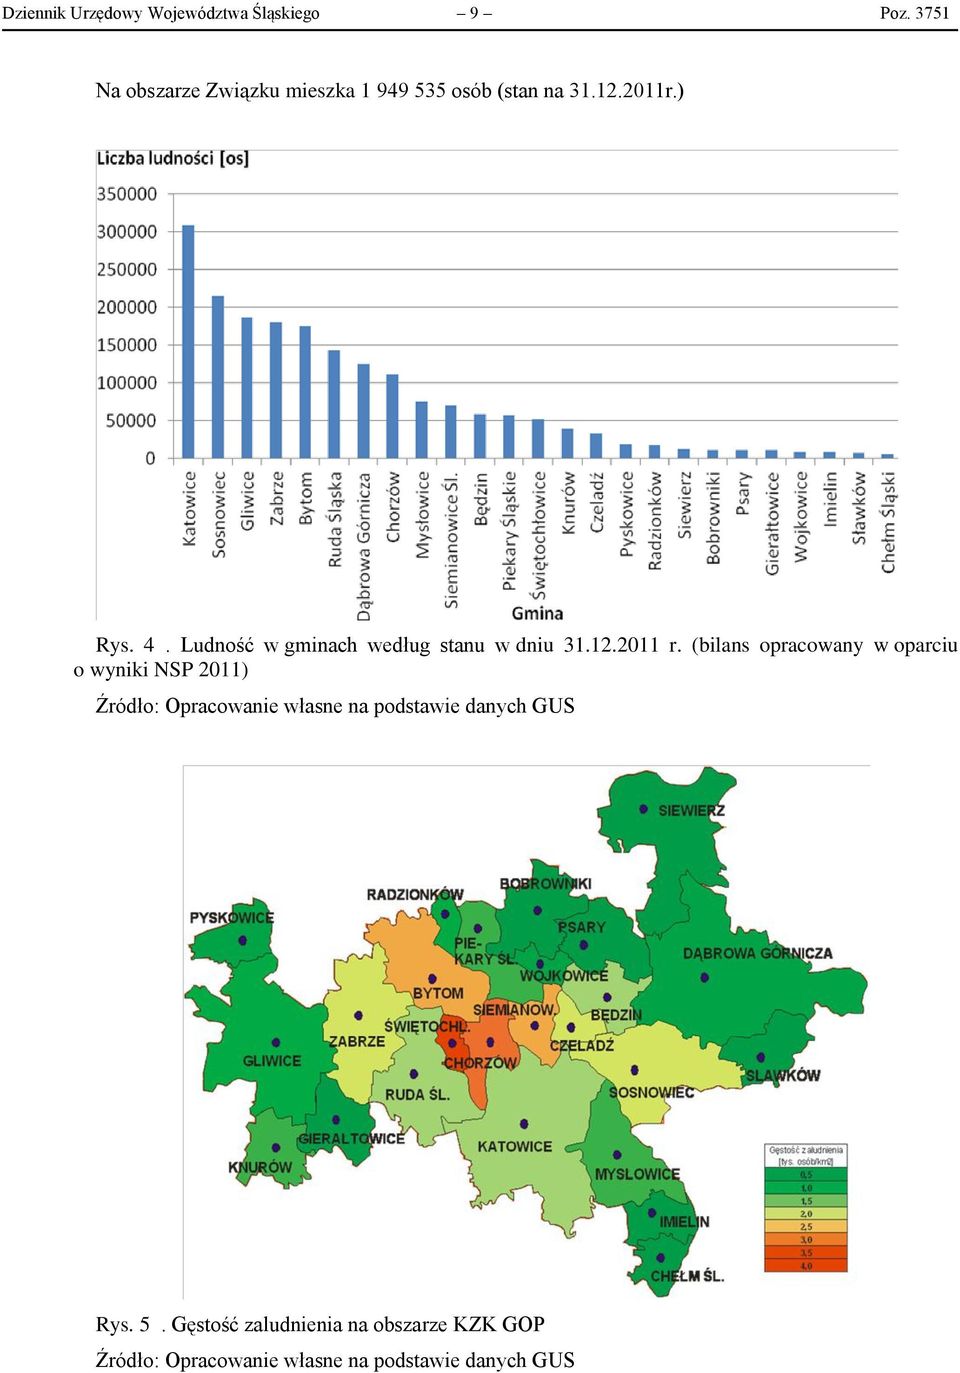 Ludność w gminach według stanu w dniu 31.12.2011 r.